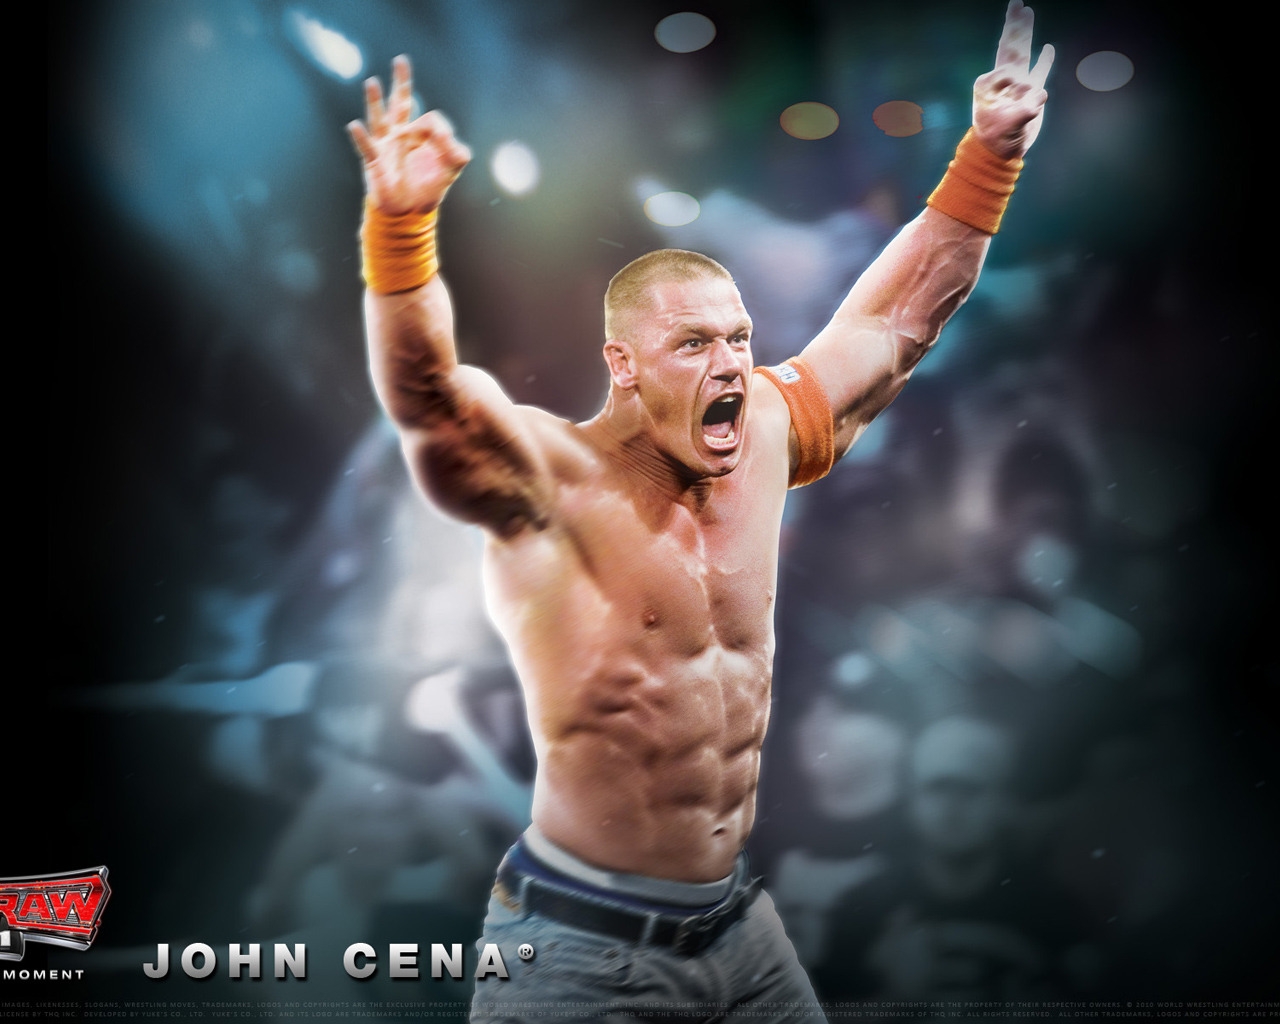 John Cena for 1280 x 1024 resolution